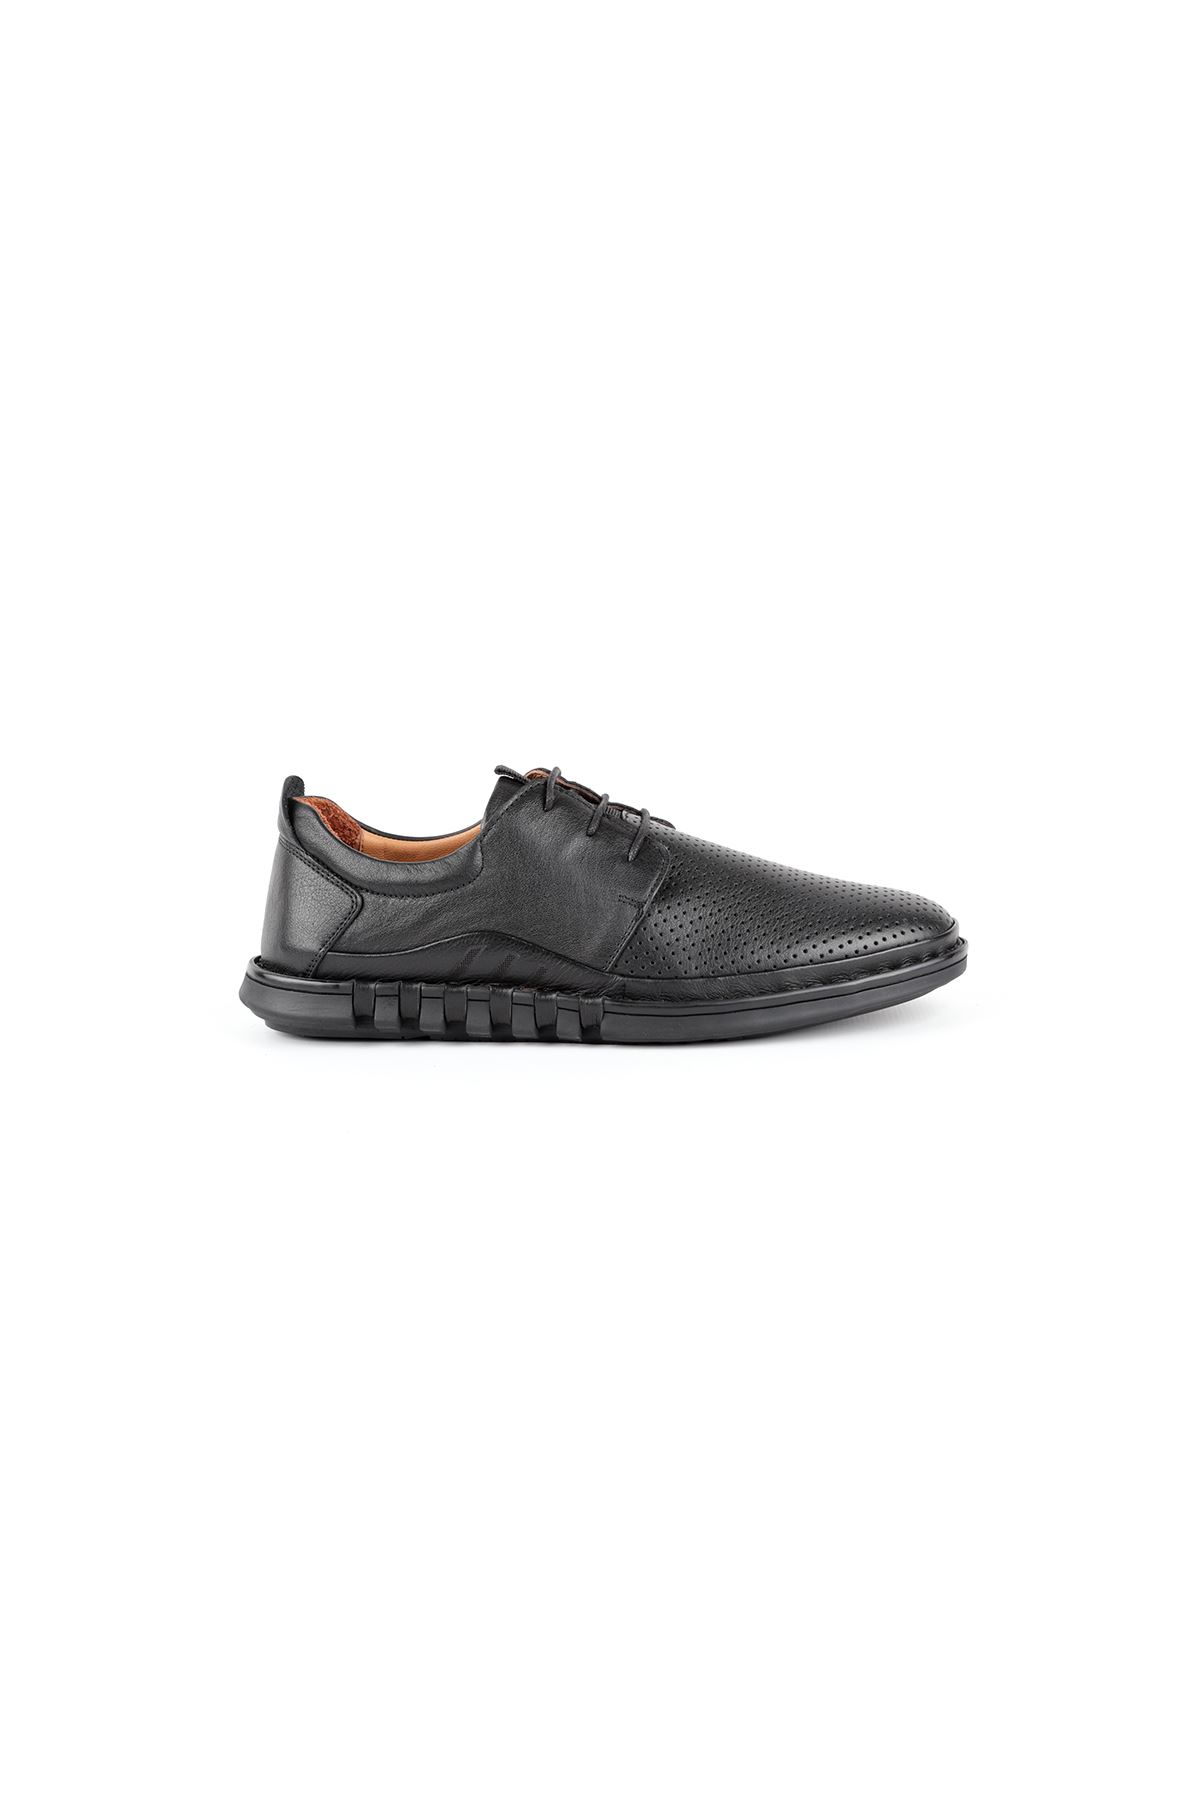 Libero L3759 Black Casual Shoes